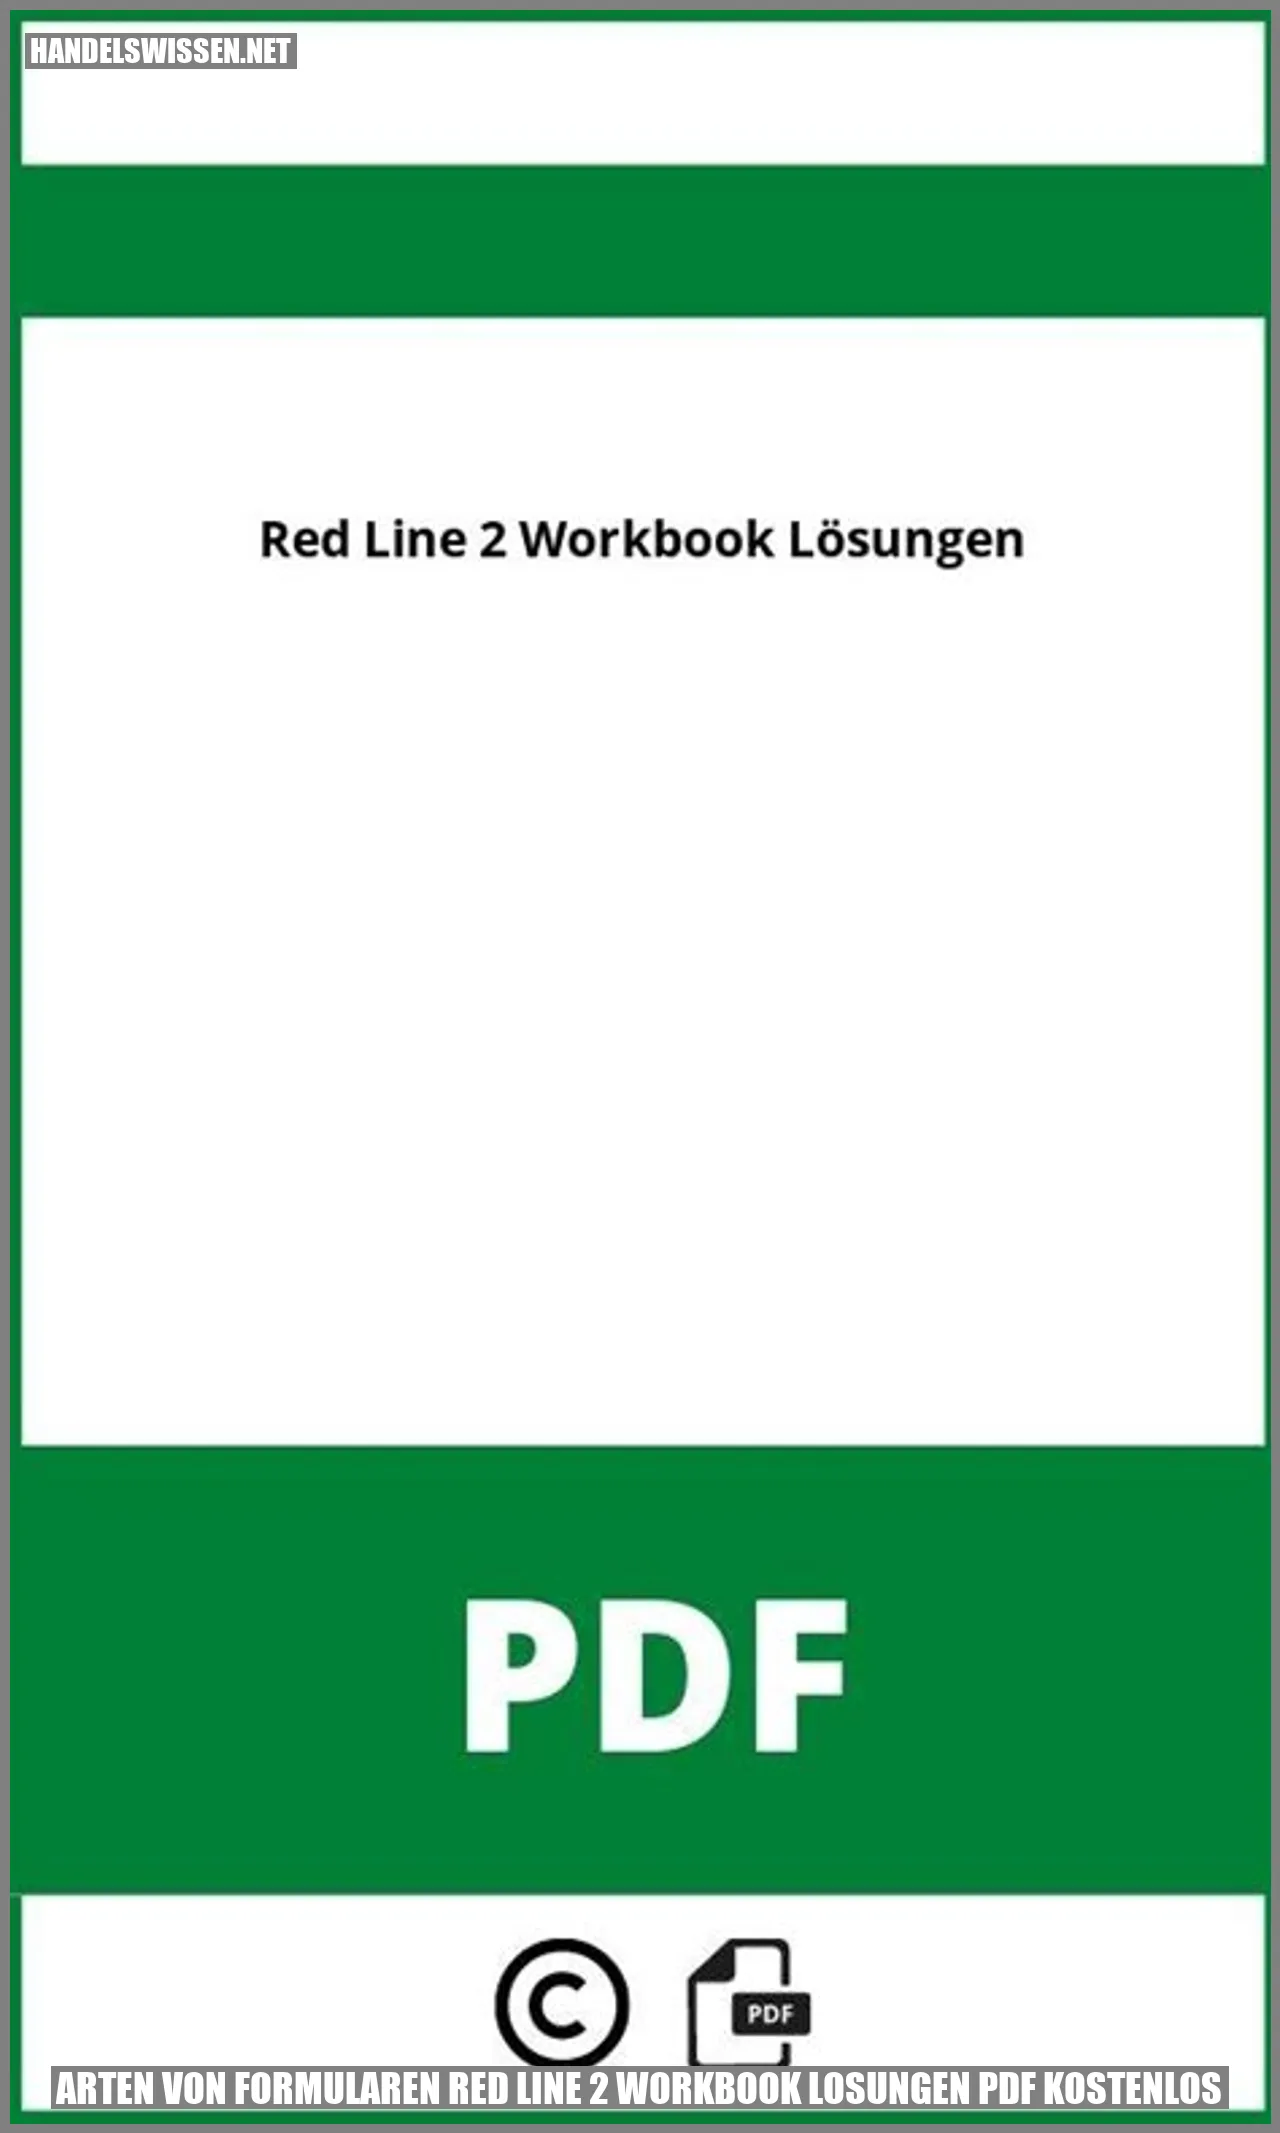 Arten von Formularen red line 2 workbook losungen pdf kostenlos